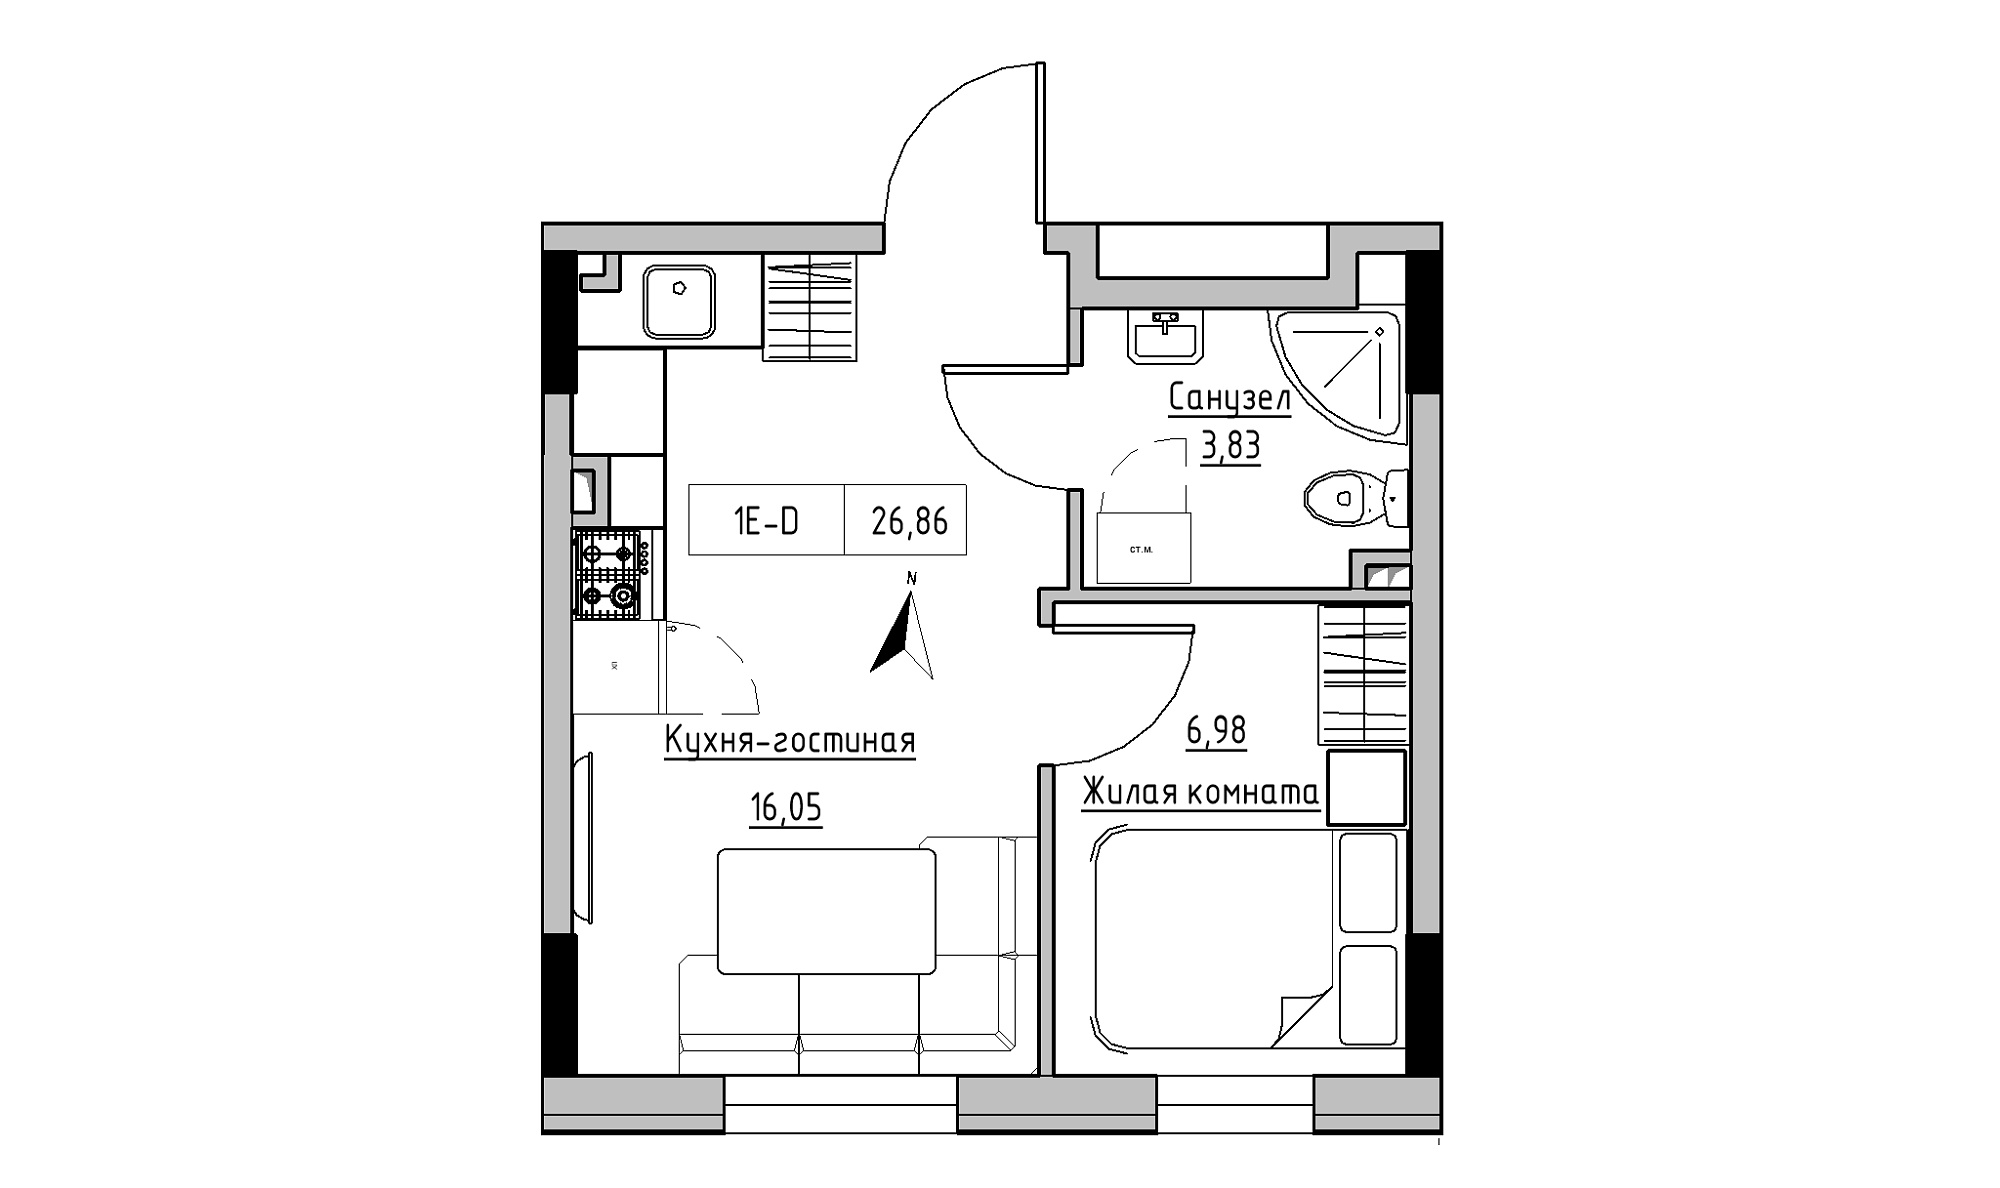 Планування 1-к квартира площею 26.86м2, KS-025-01/0012.